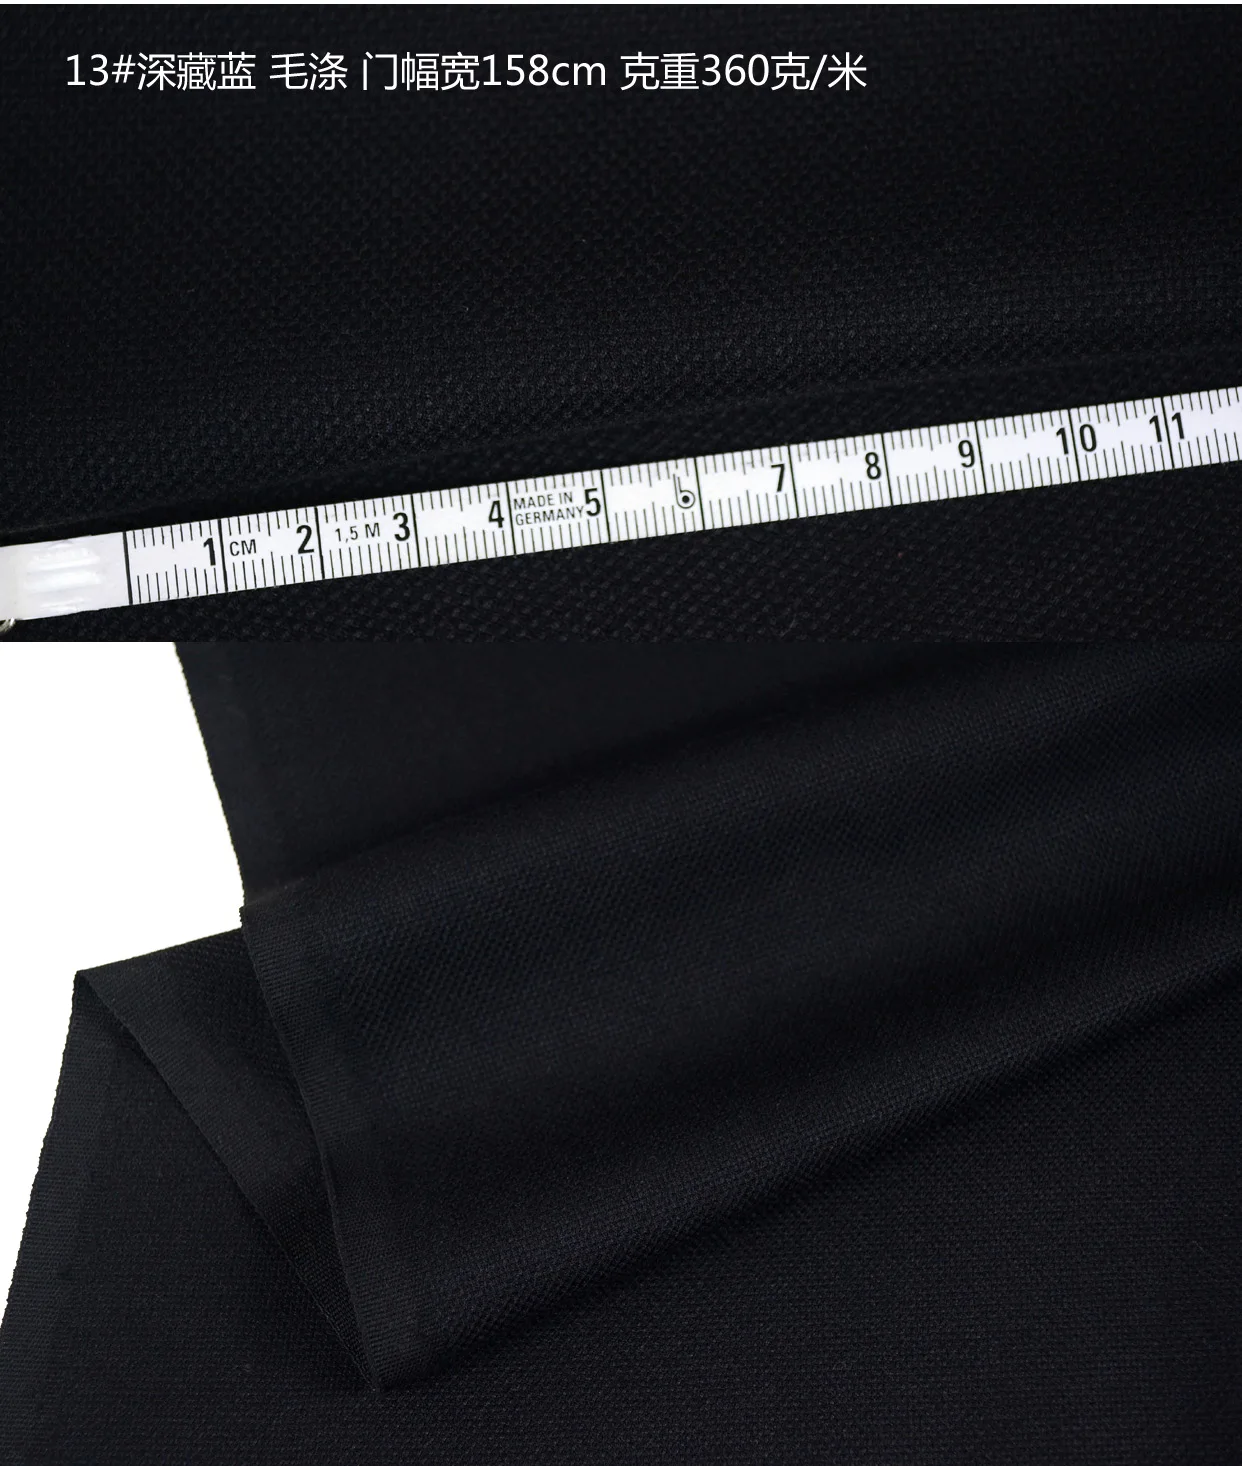 Импортная Высокая чистая шерстяная ткань костюм брюки костюм бизнес Наряд Костюмы шерсть камвольной ткани